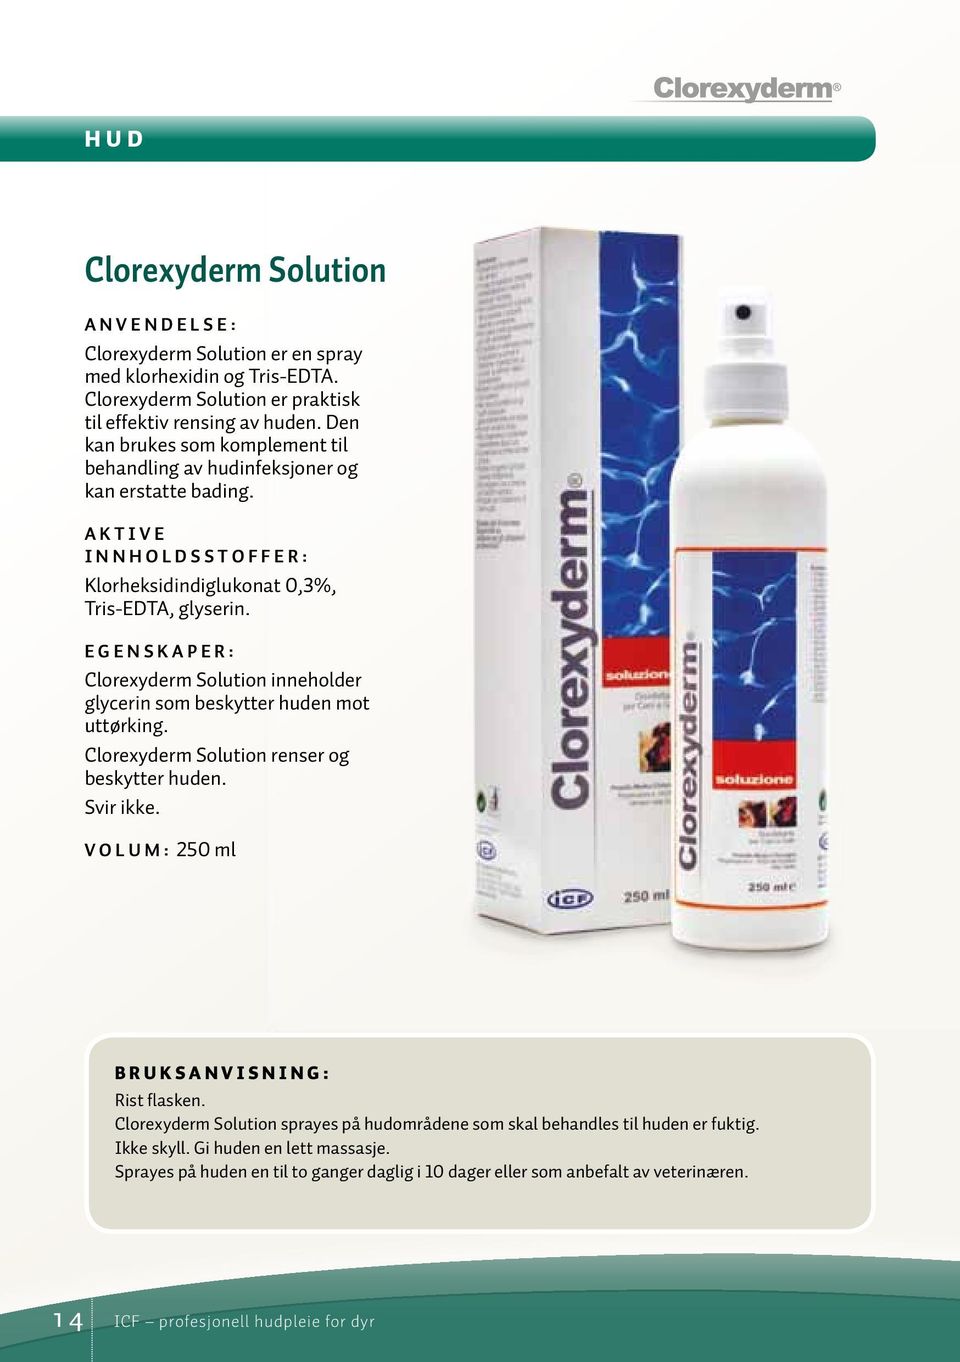 EGENSKAPER: Clorexyderm Solution inneholder glycerin som beskytter huden mot uttørking. Clorexyderm Solution renser og beskytter huden. Svir ikke.